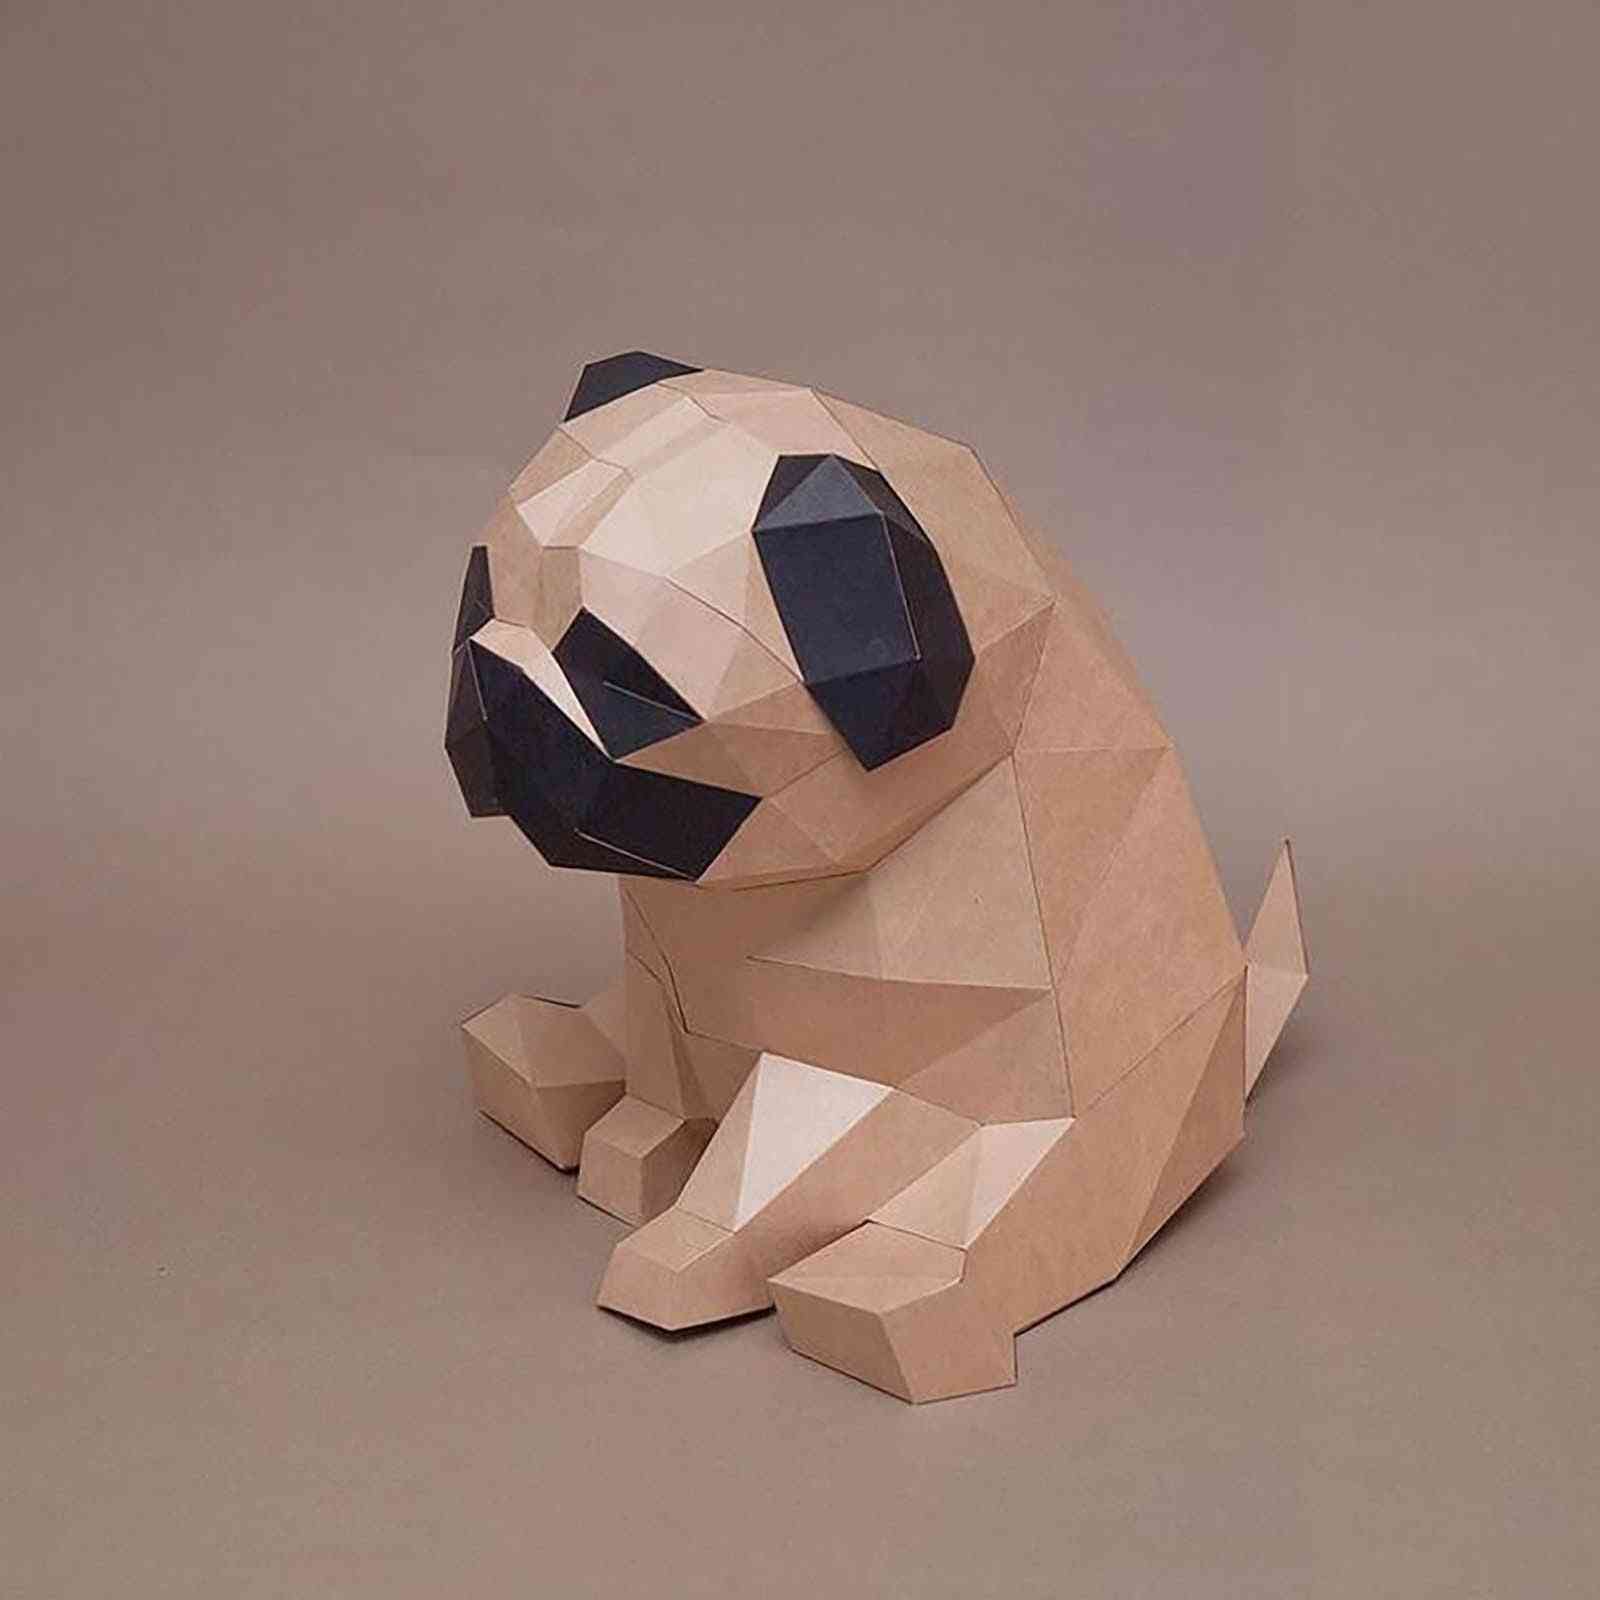 3d model- papercraft animales creativos, decoración de la pared del hogar, rompecabezas